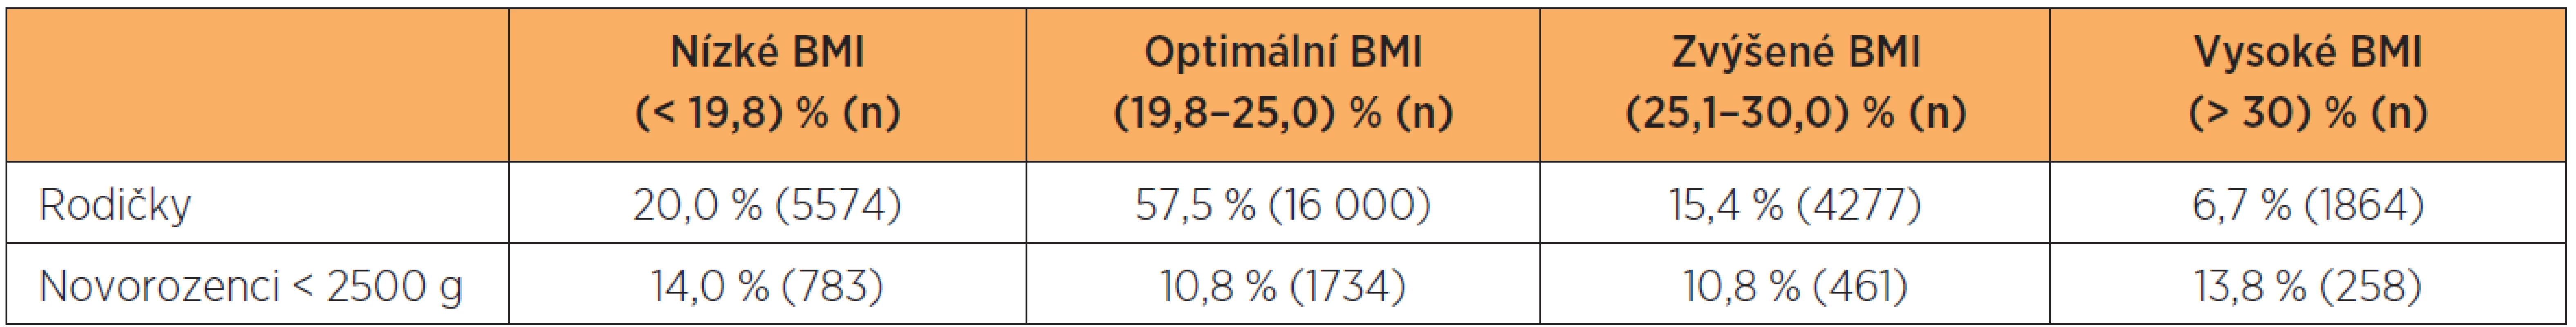 Rozdělení podle skupin BMI (n = 27 841)